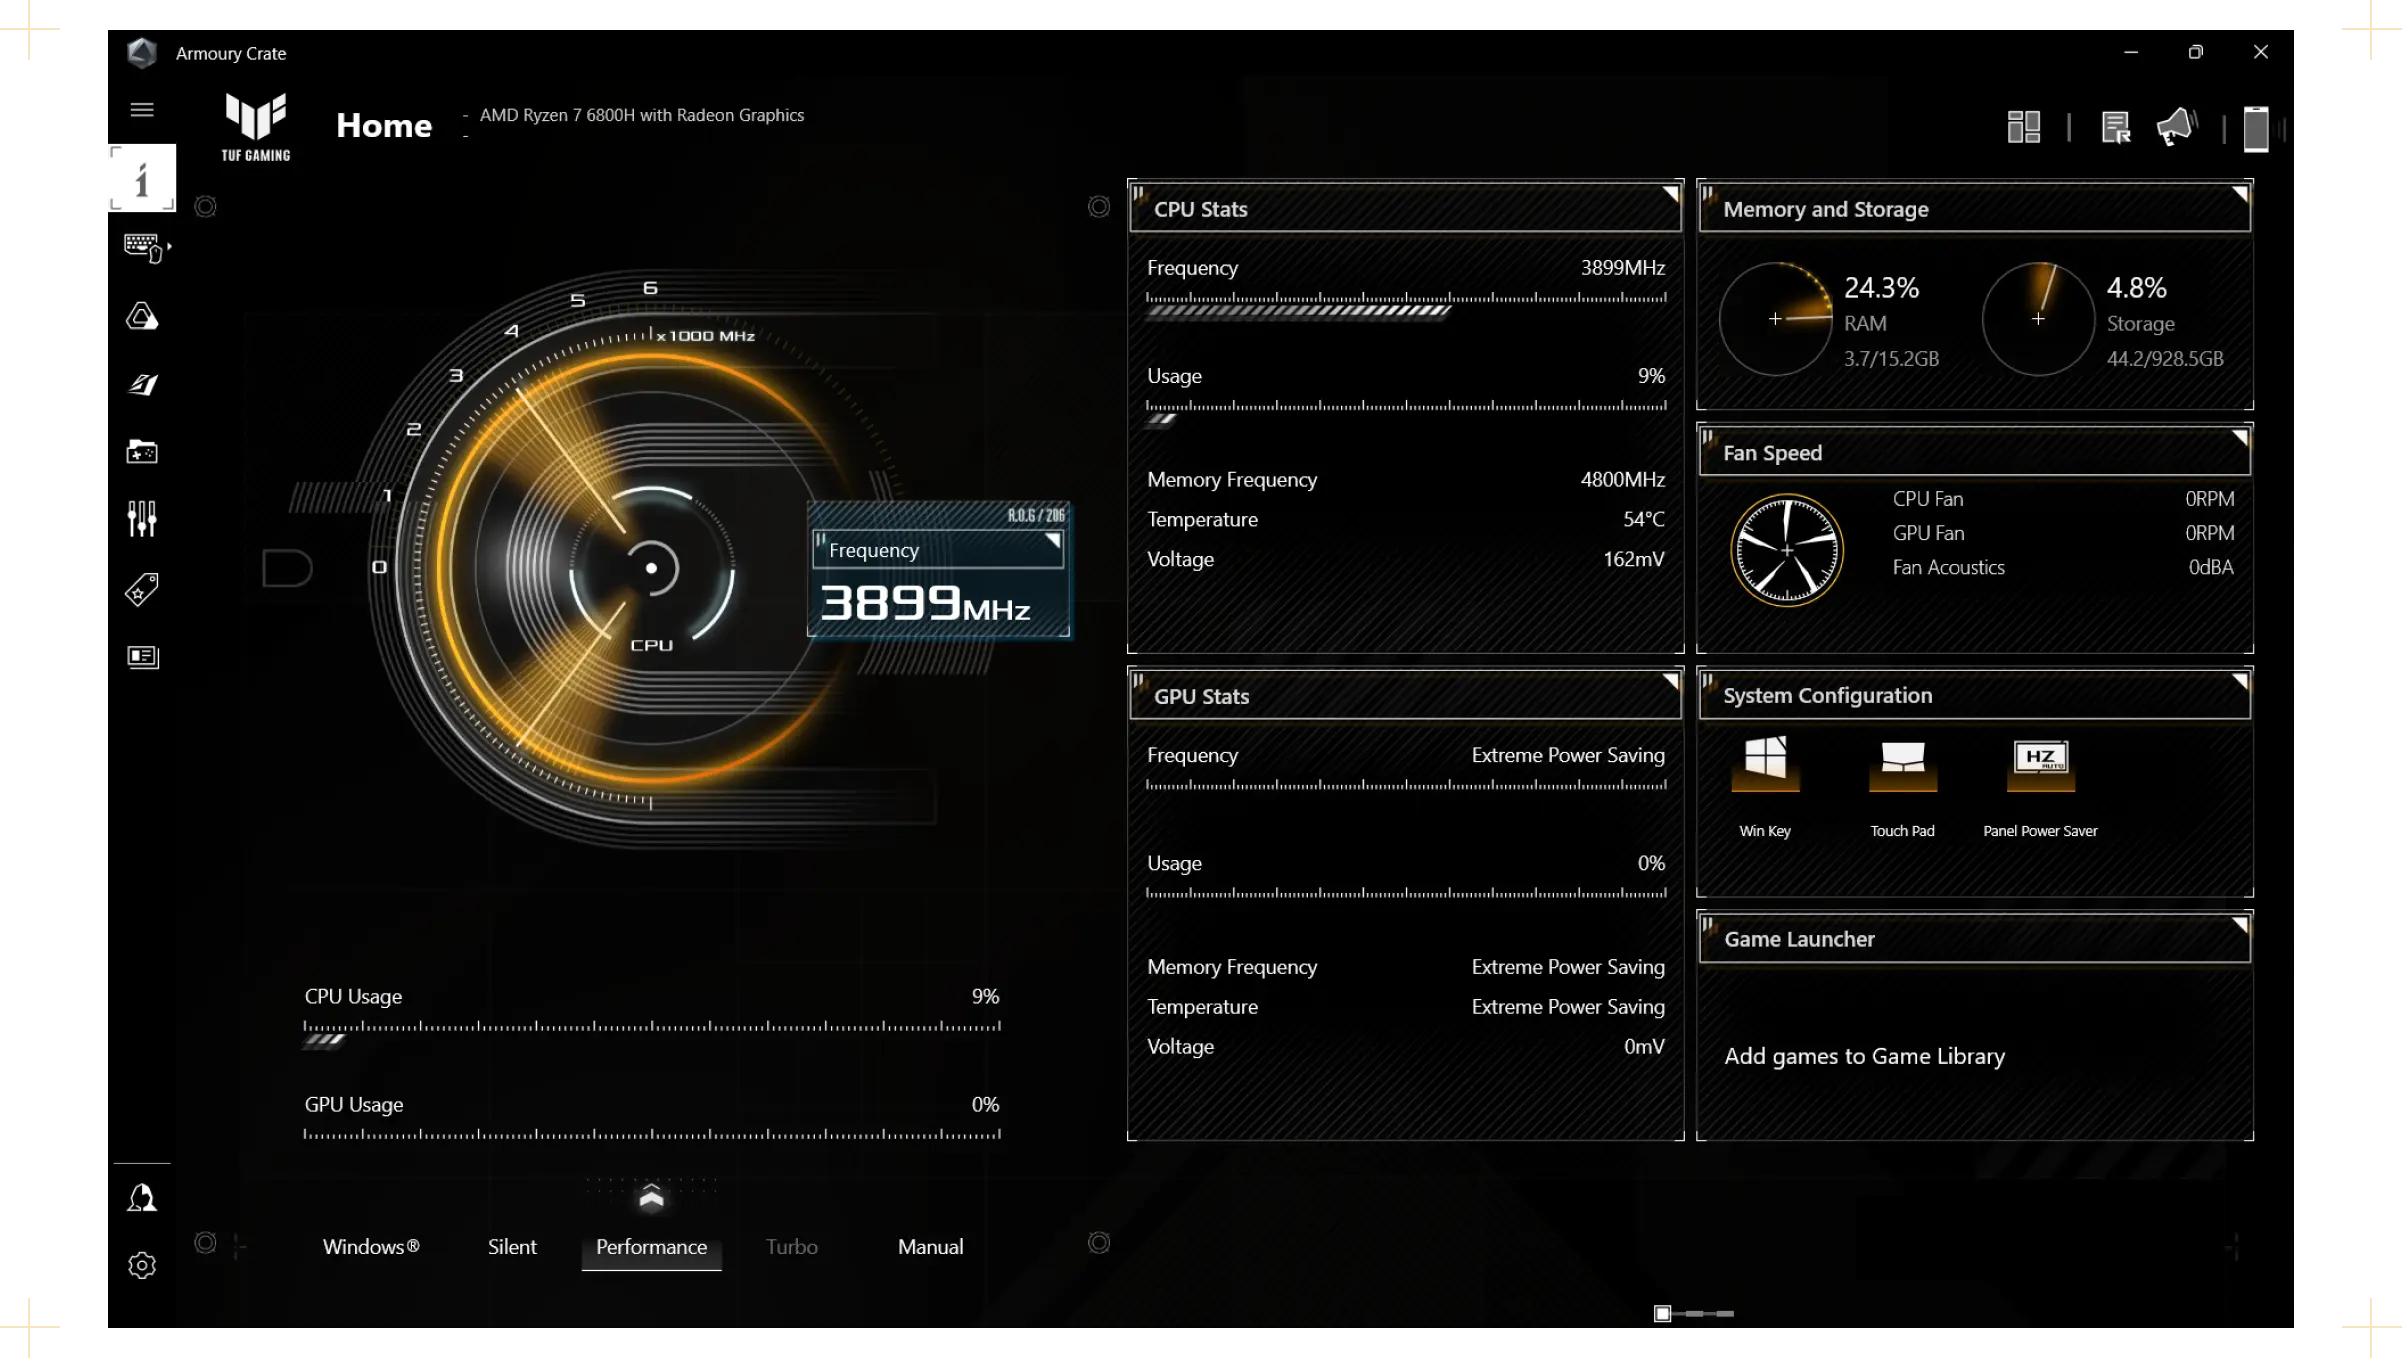 Capture d'écran du logiciel Armoury Crate de TUF montrant l'état du système et les fonctions disponibles.